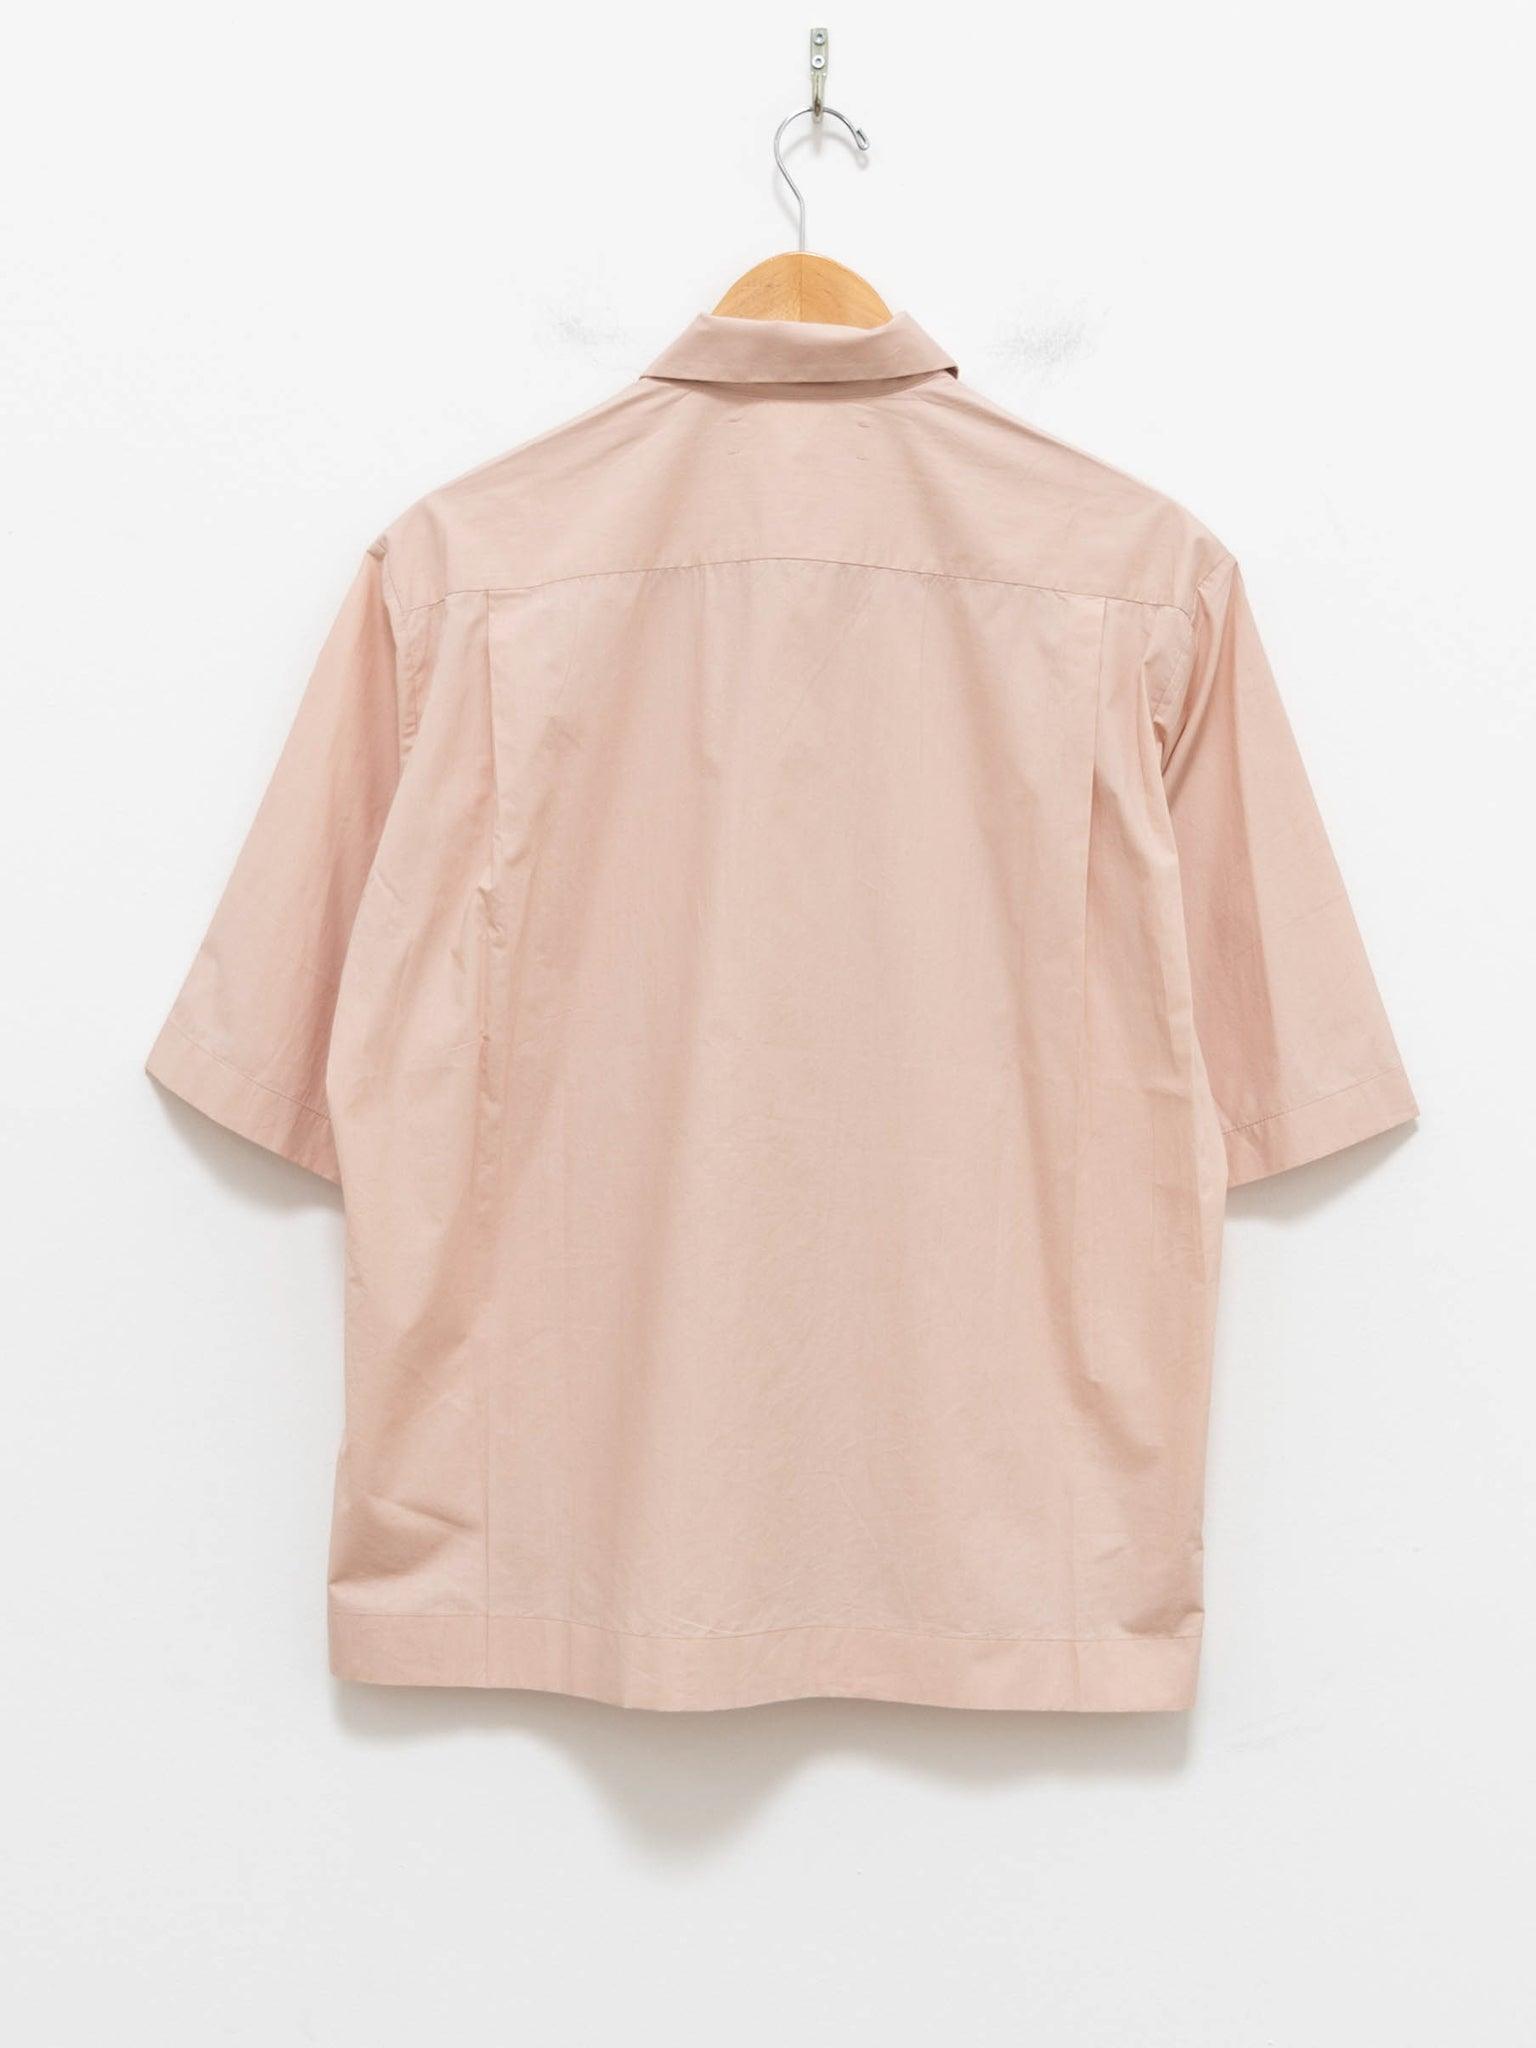 Namu Shop - Jan Machenhauer Pascal Shirt - Blush Poplin